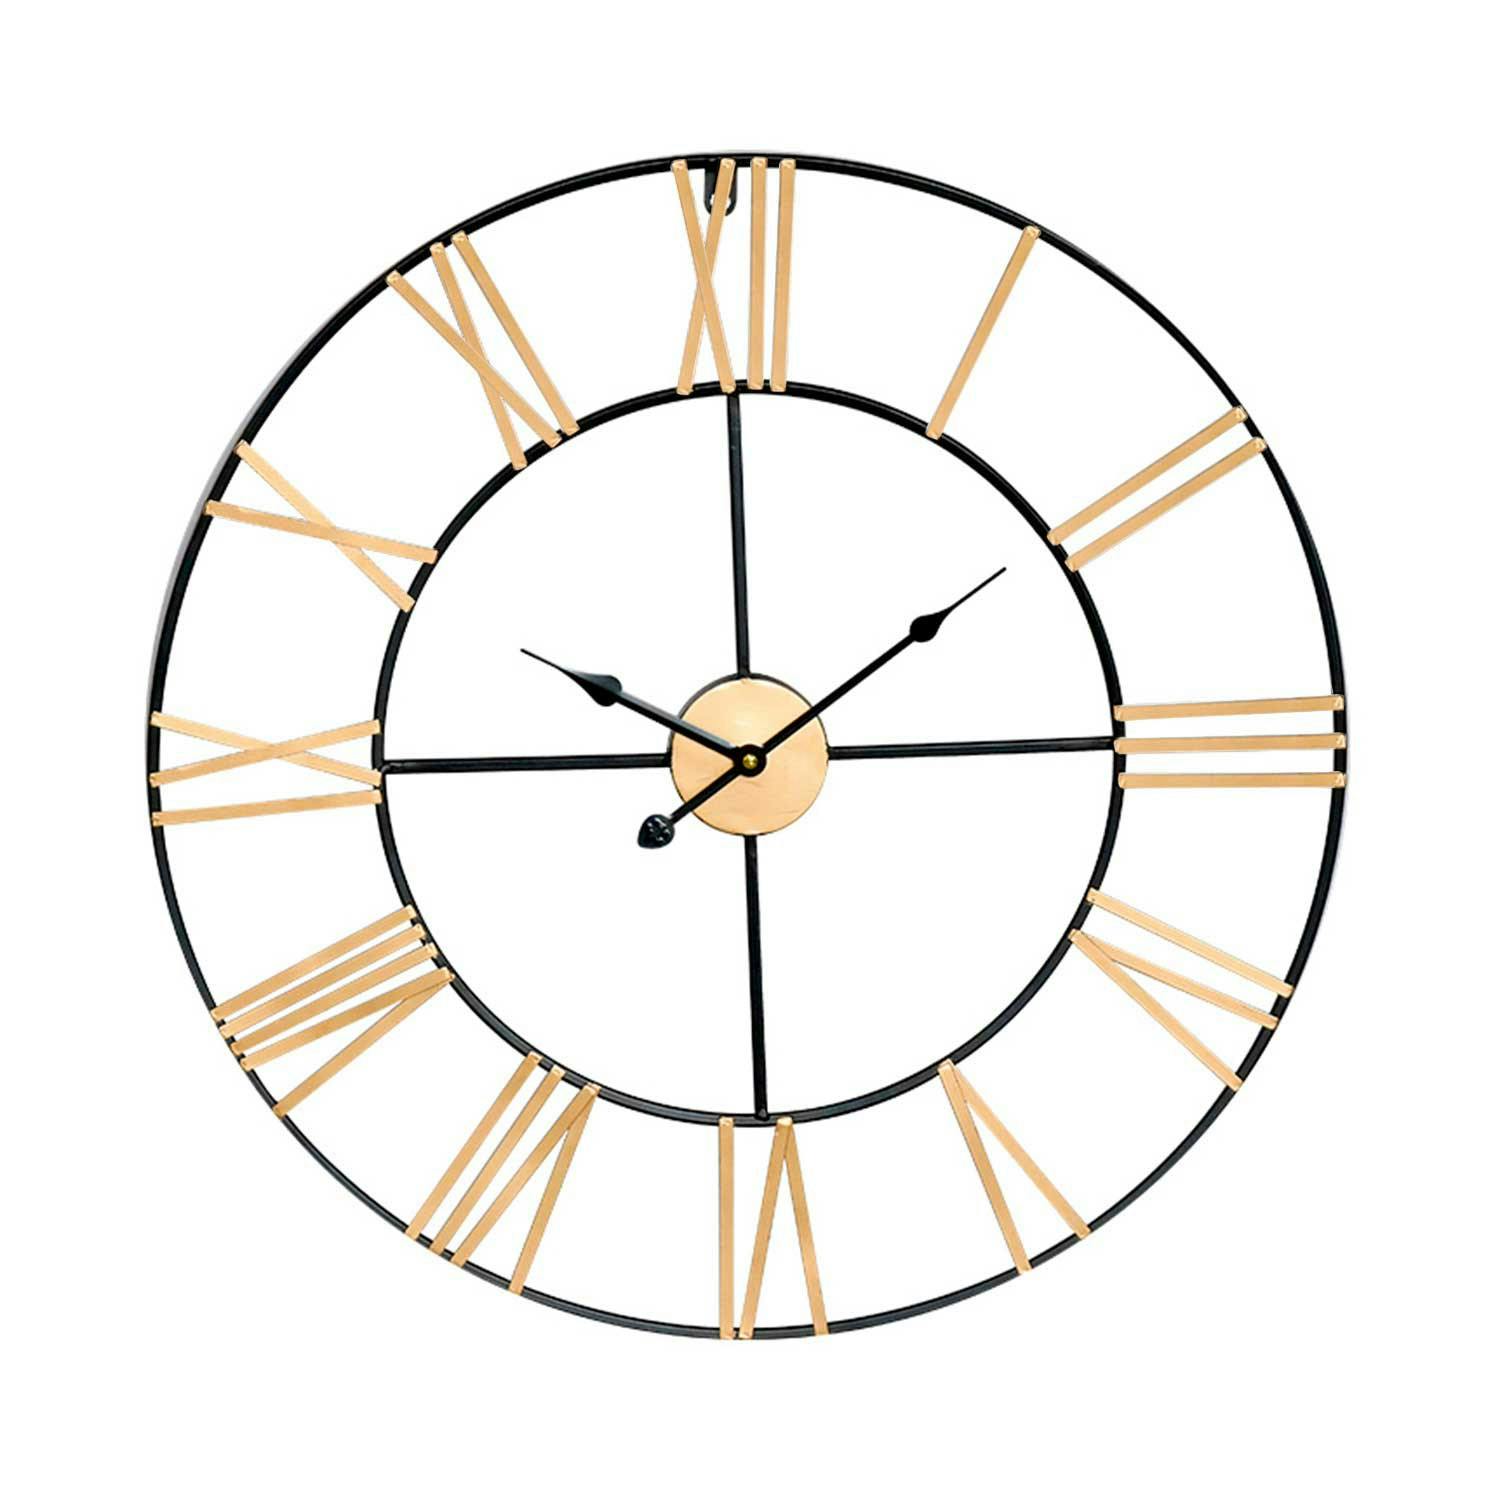 Reloj de Pared Vintage Negro/Dorado Ø27.3 cm Thinia Home